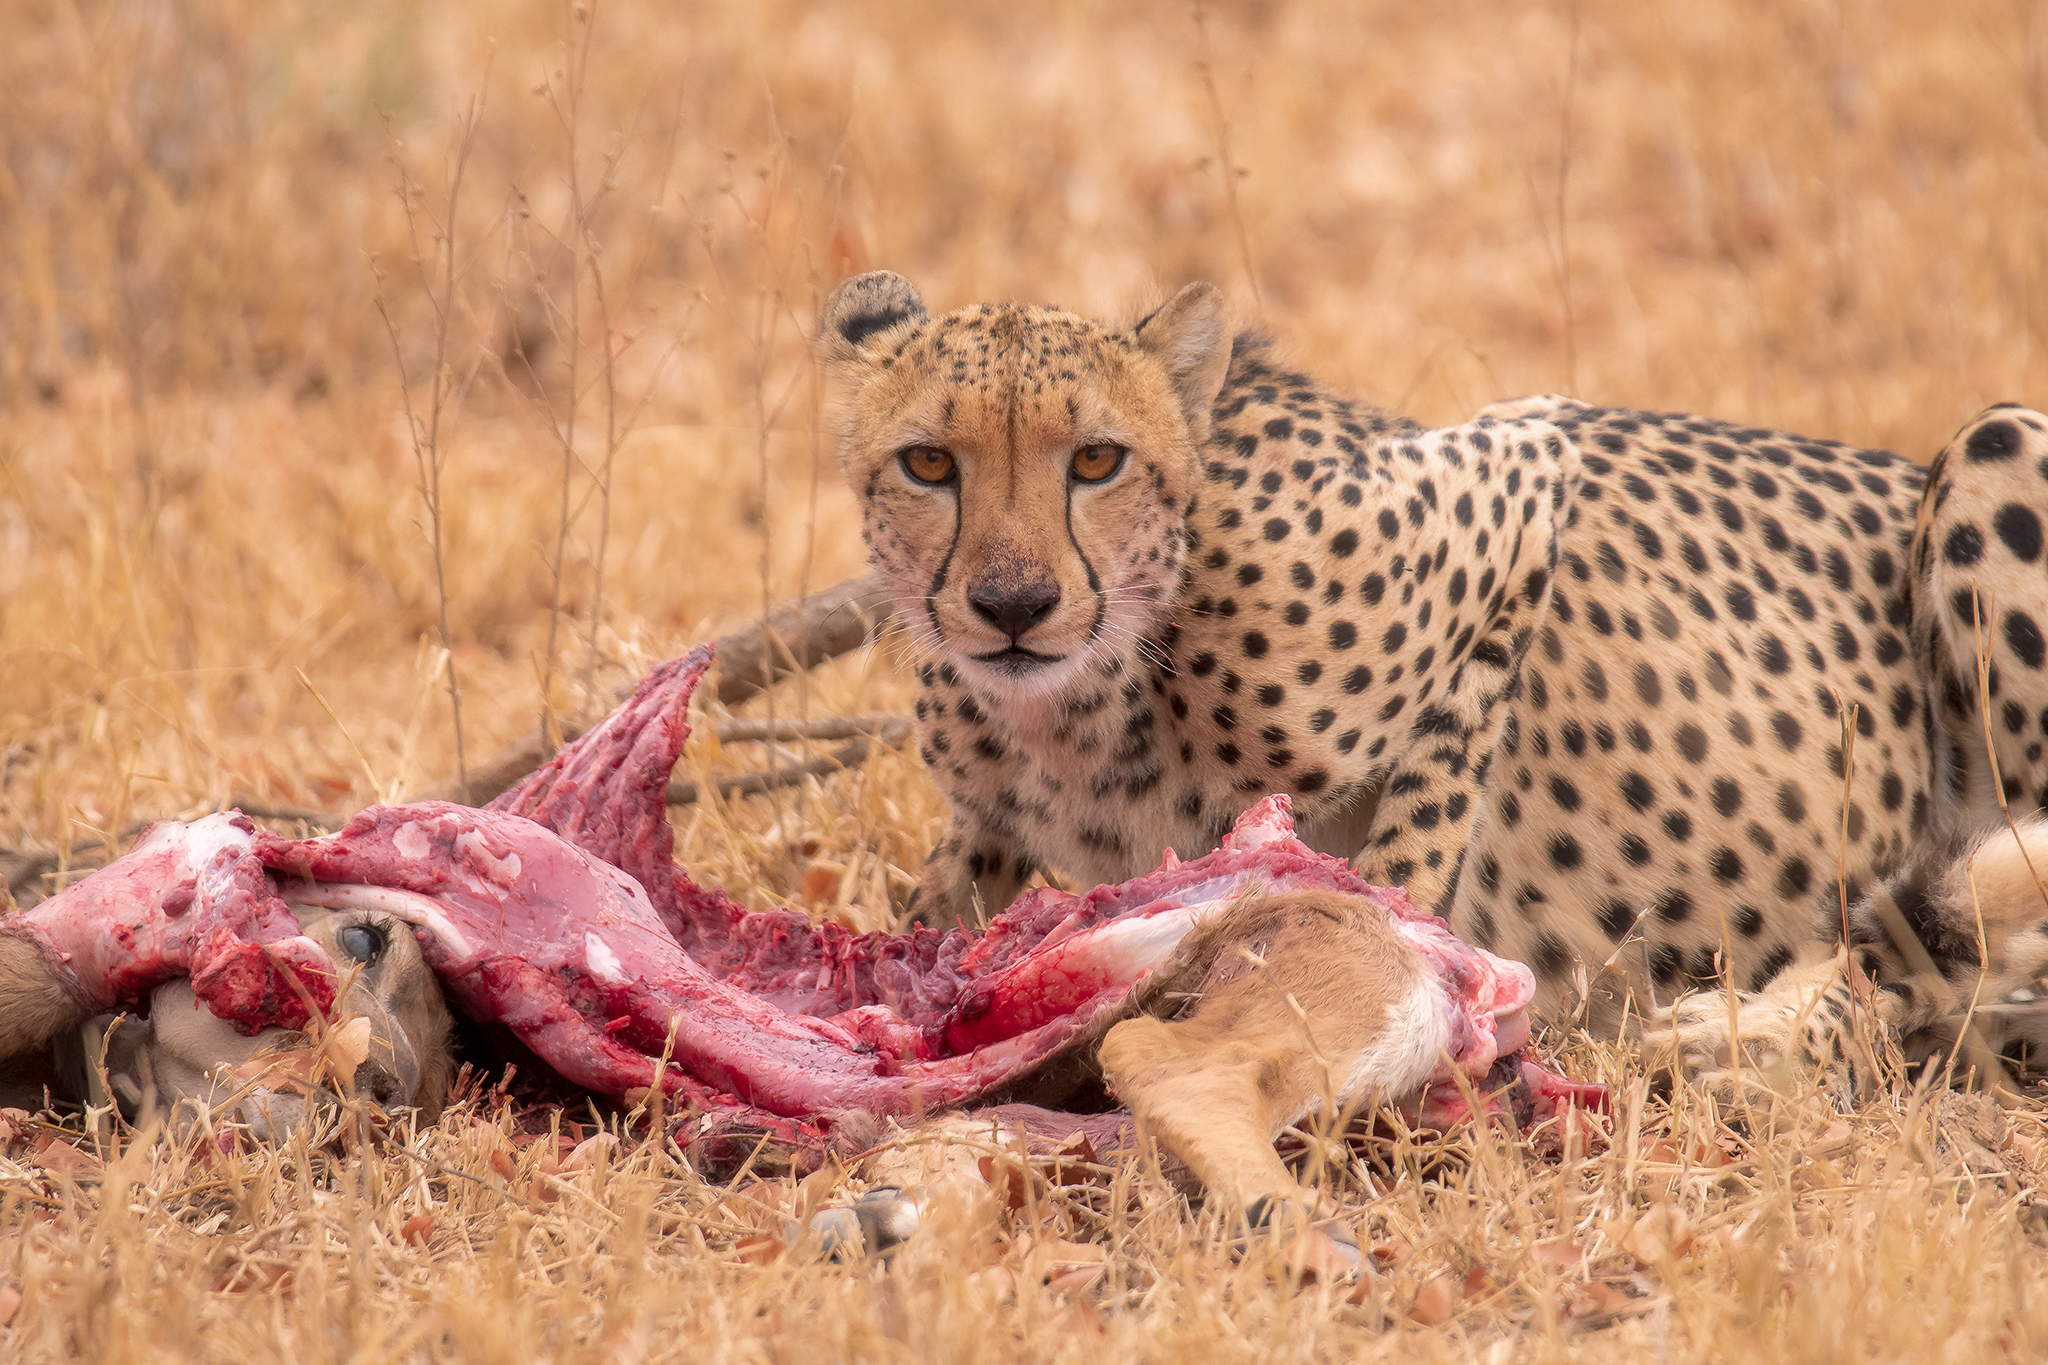 Cheetah and its prey...